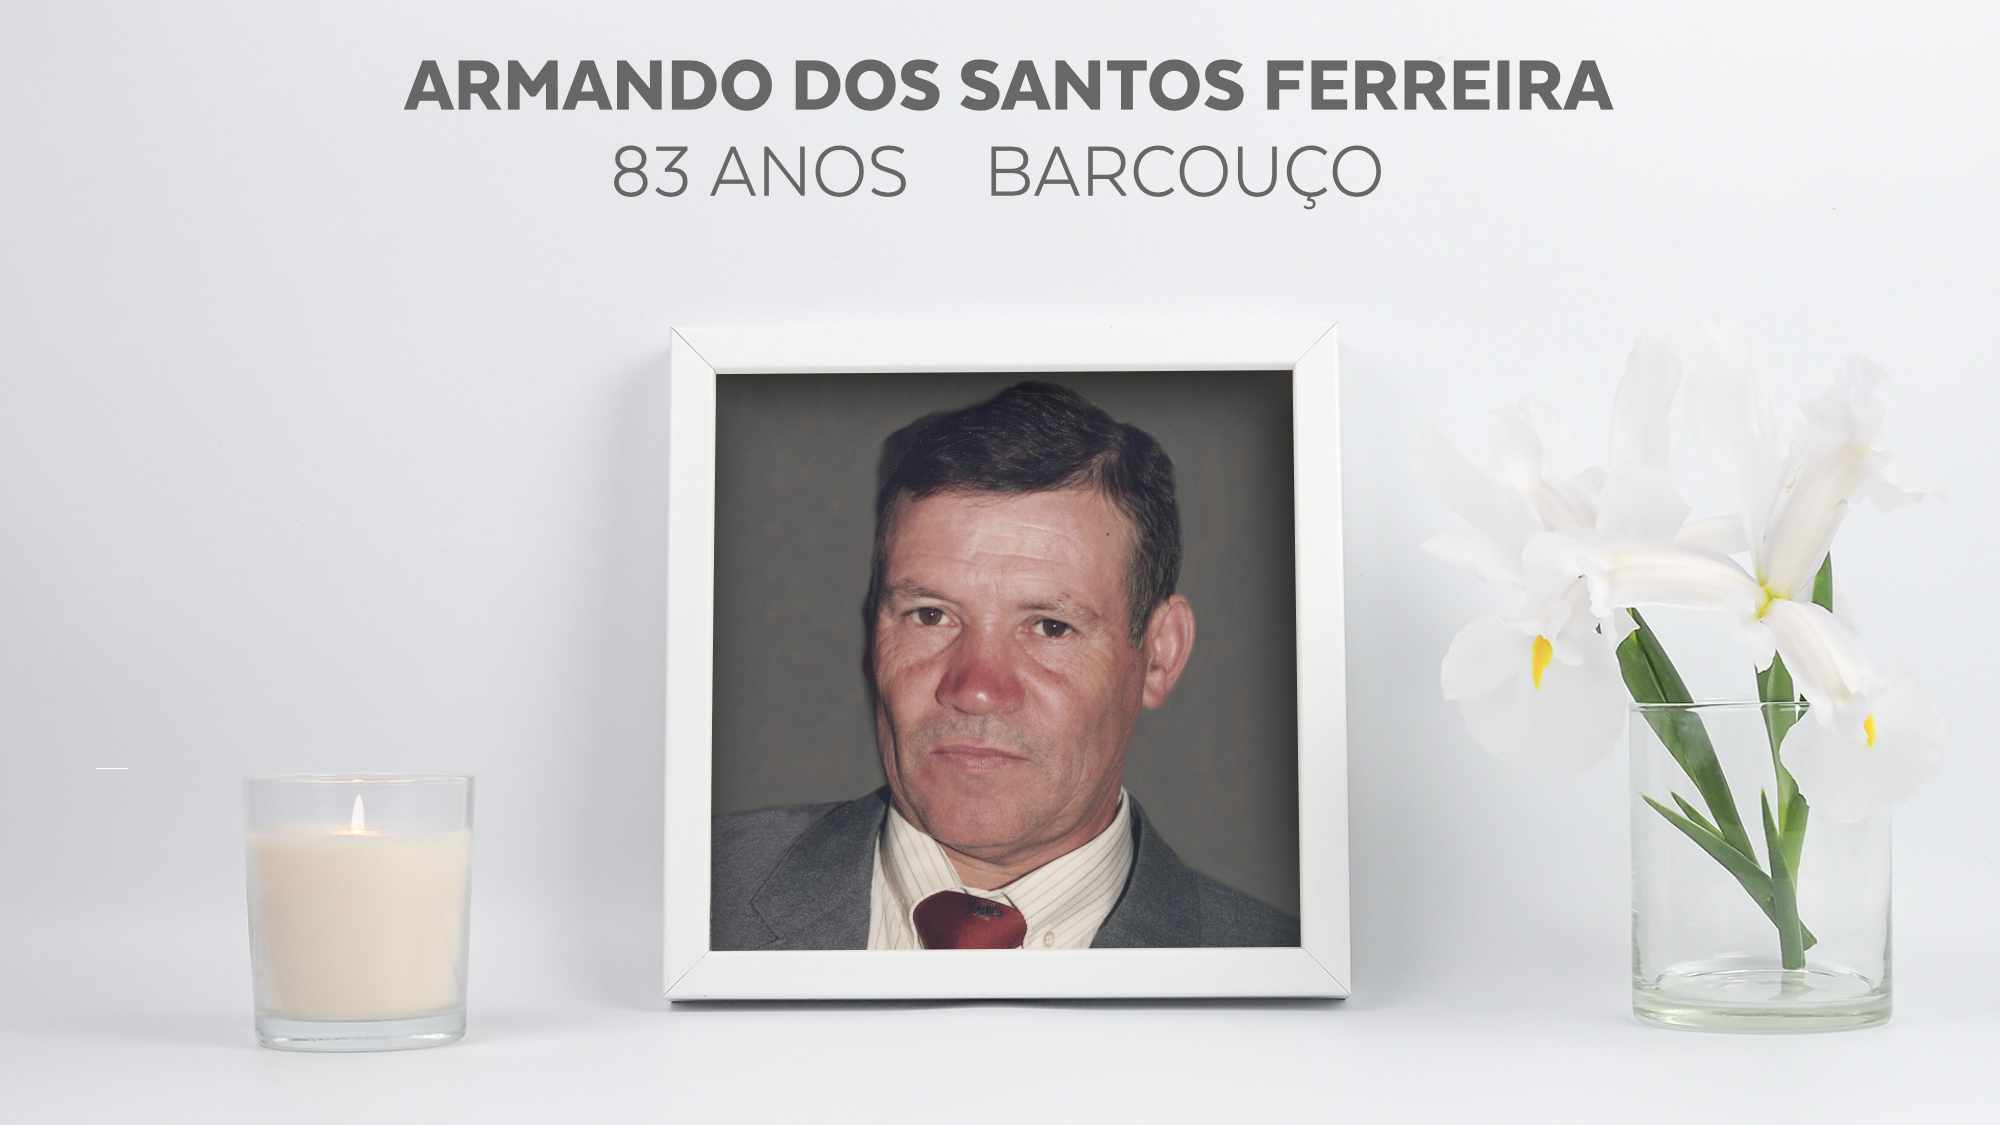 Armando dos Santos Ferreira